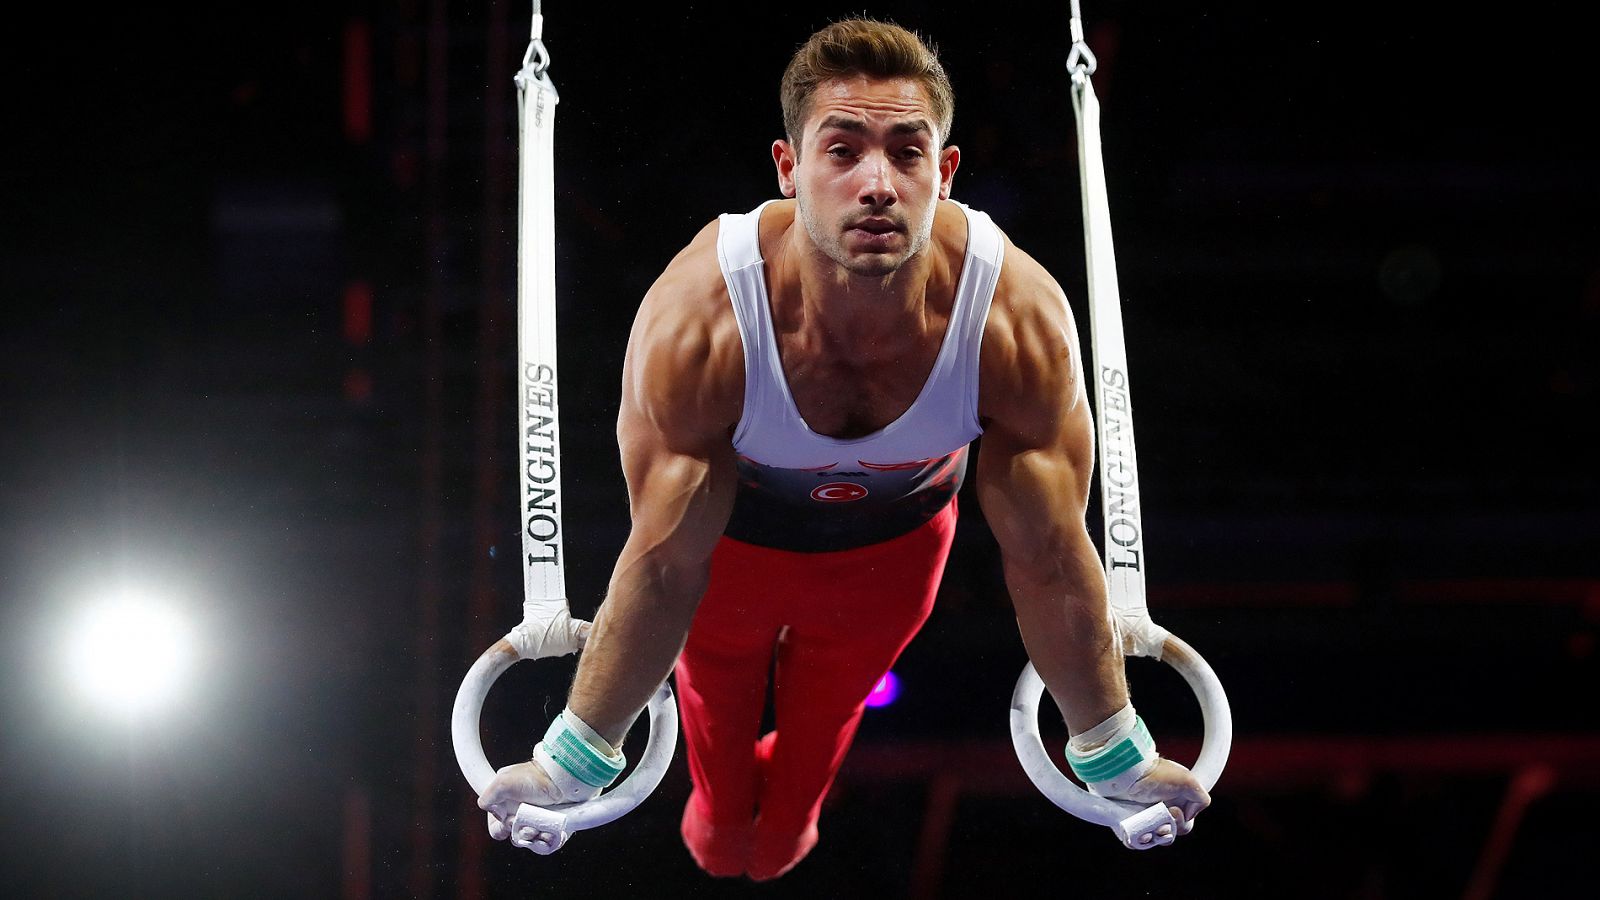 Mundial de gimnasia | Colak, campeón del mundo de anillas - rtve.es